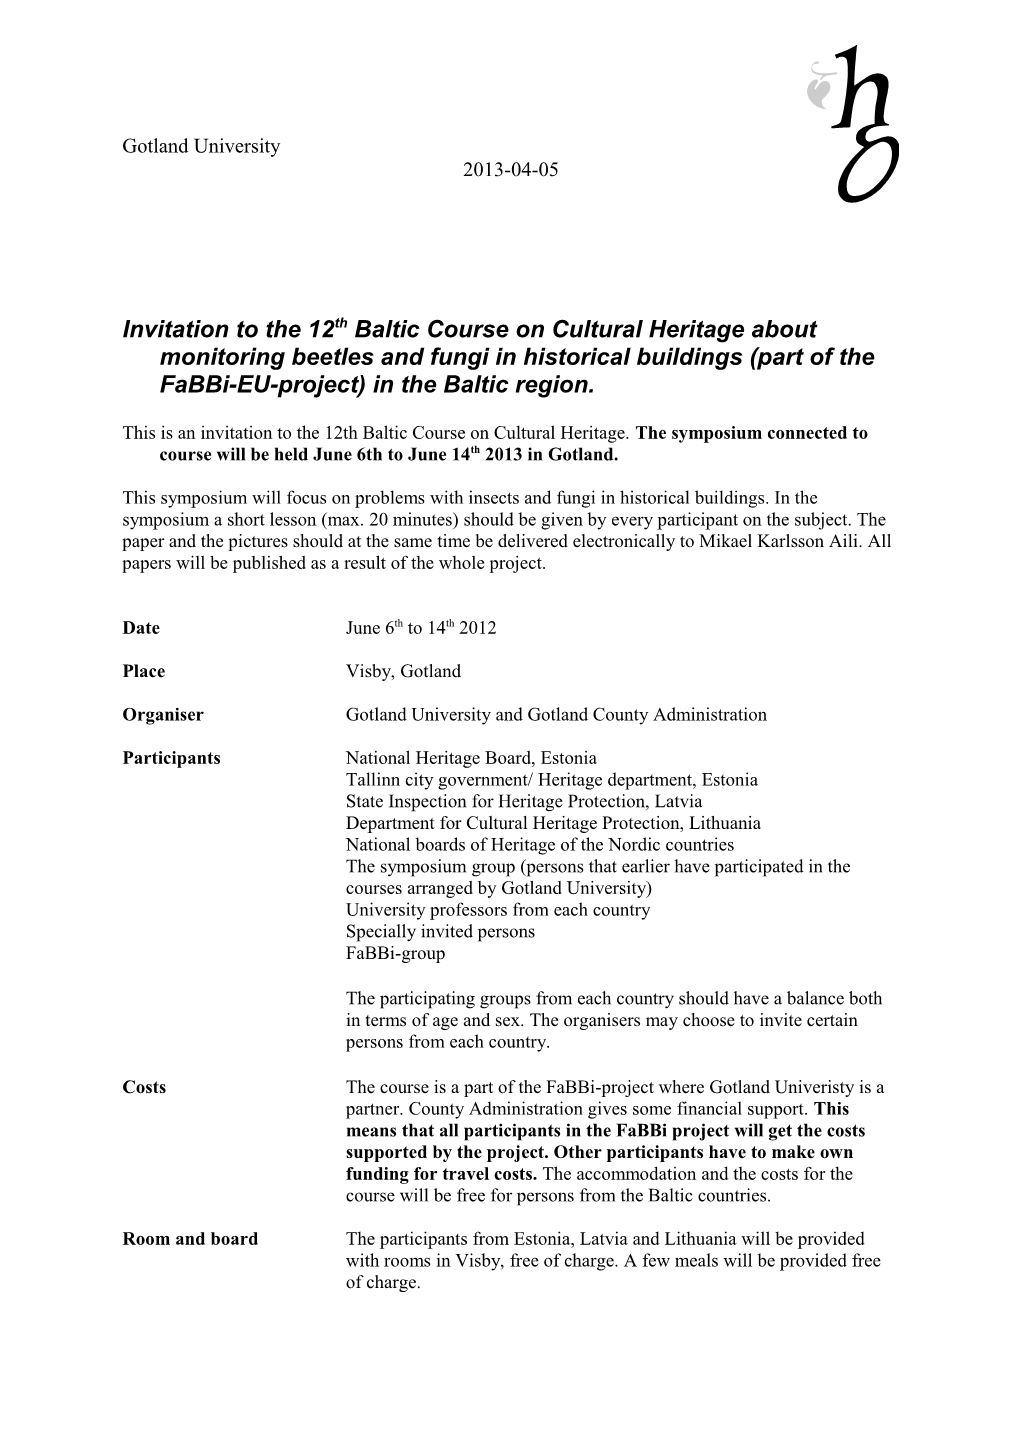 Invitation to a Baltic Seminar/Course